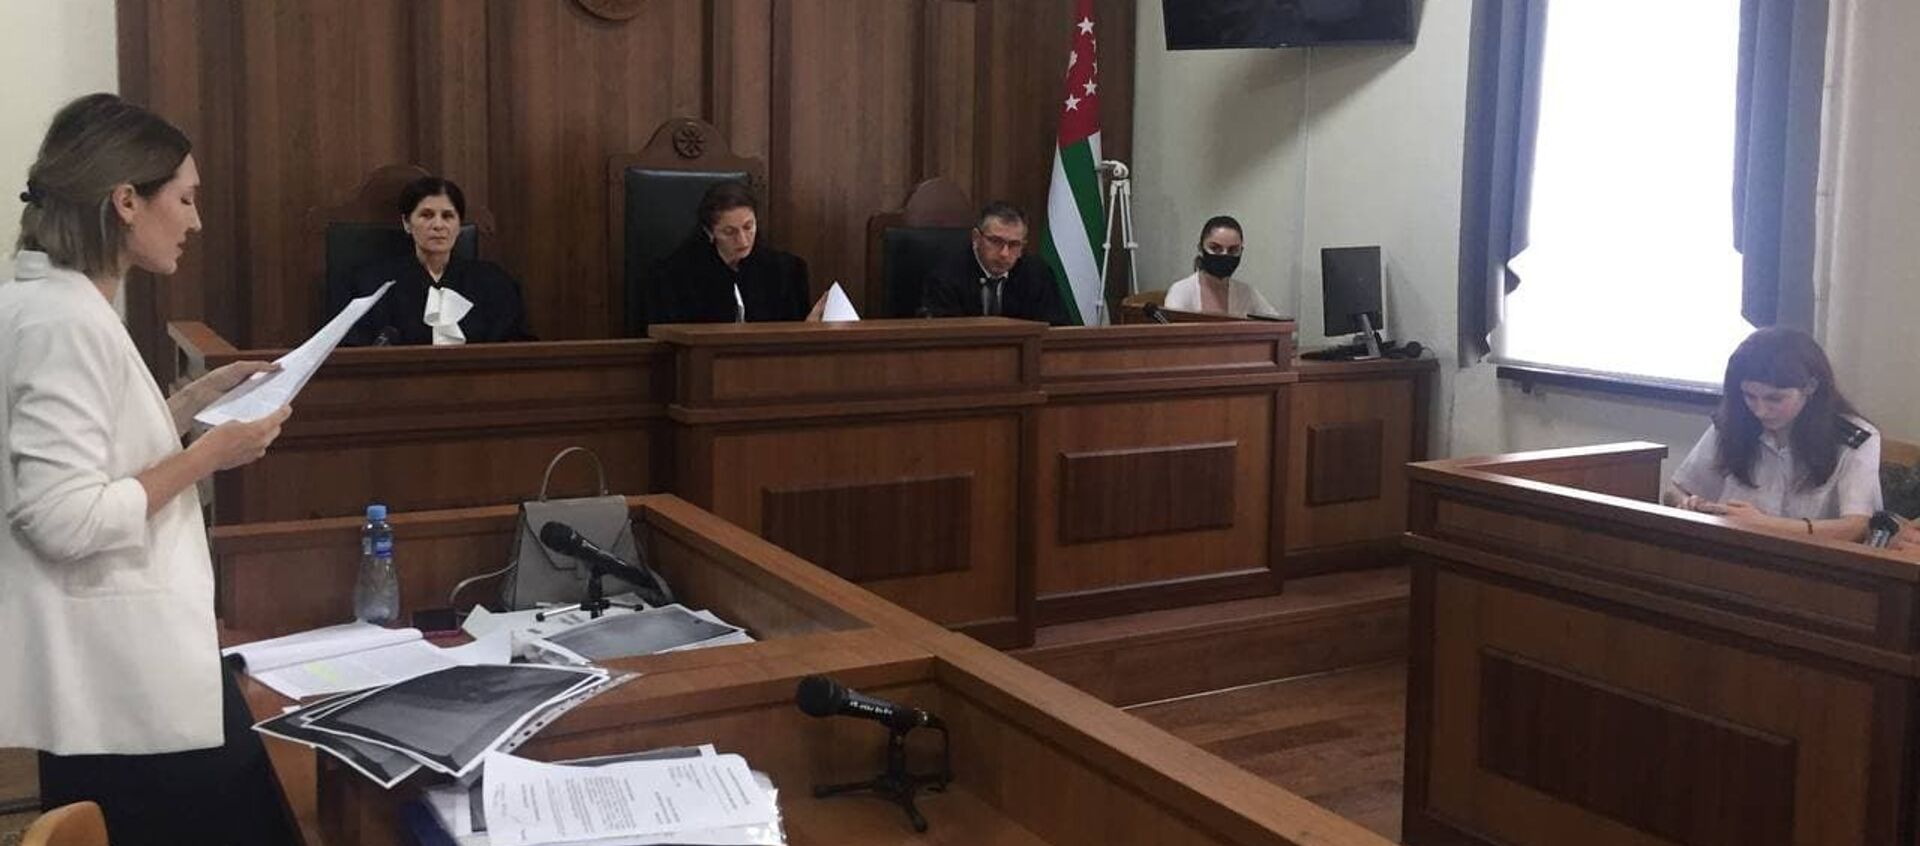 Кассационная коллегия Верховного суда Абхазии рассматривает жалобу на решение Сухумского городского суда  - Sputnik Аҧсны, 1920, 09.07.2021